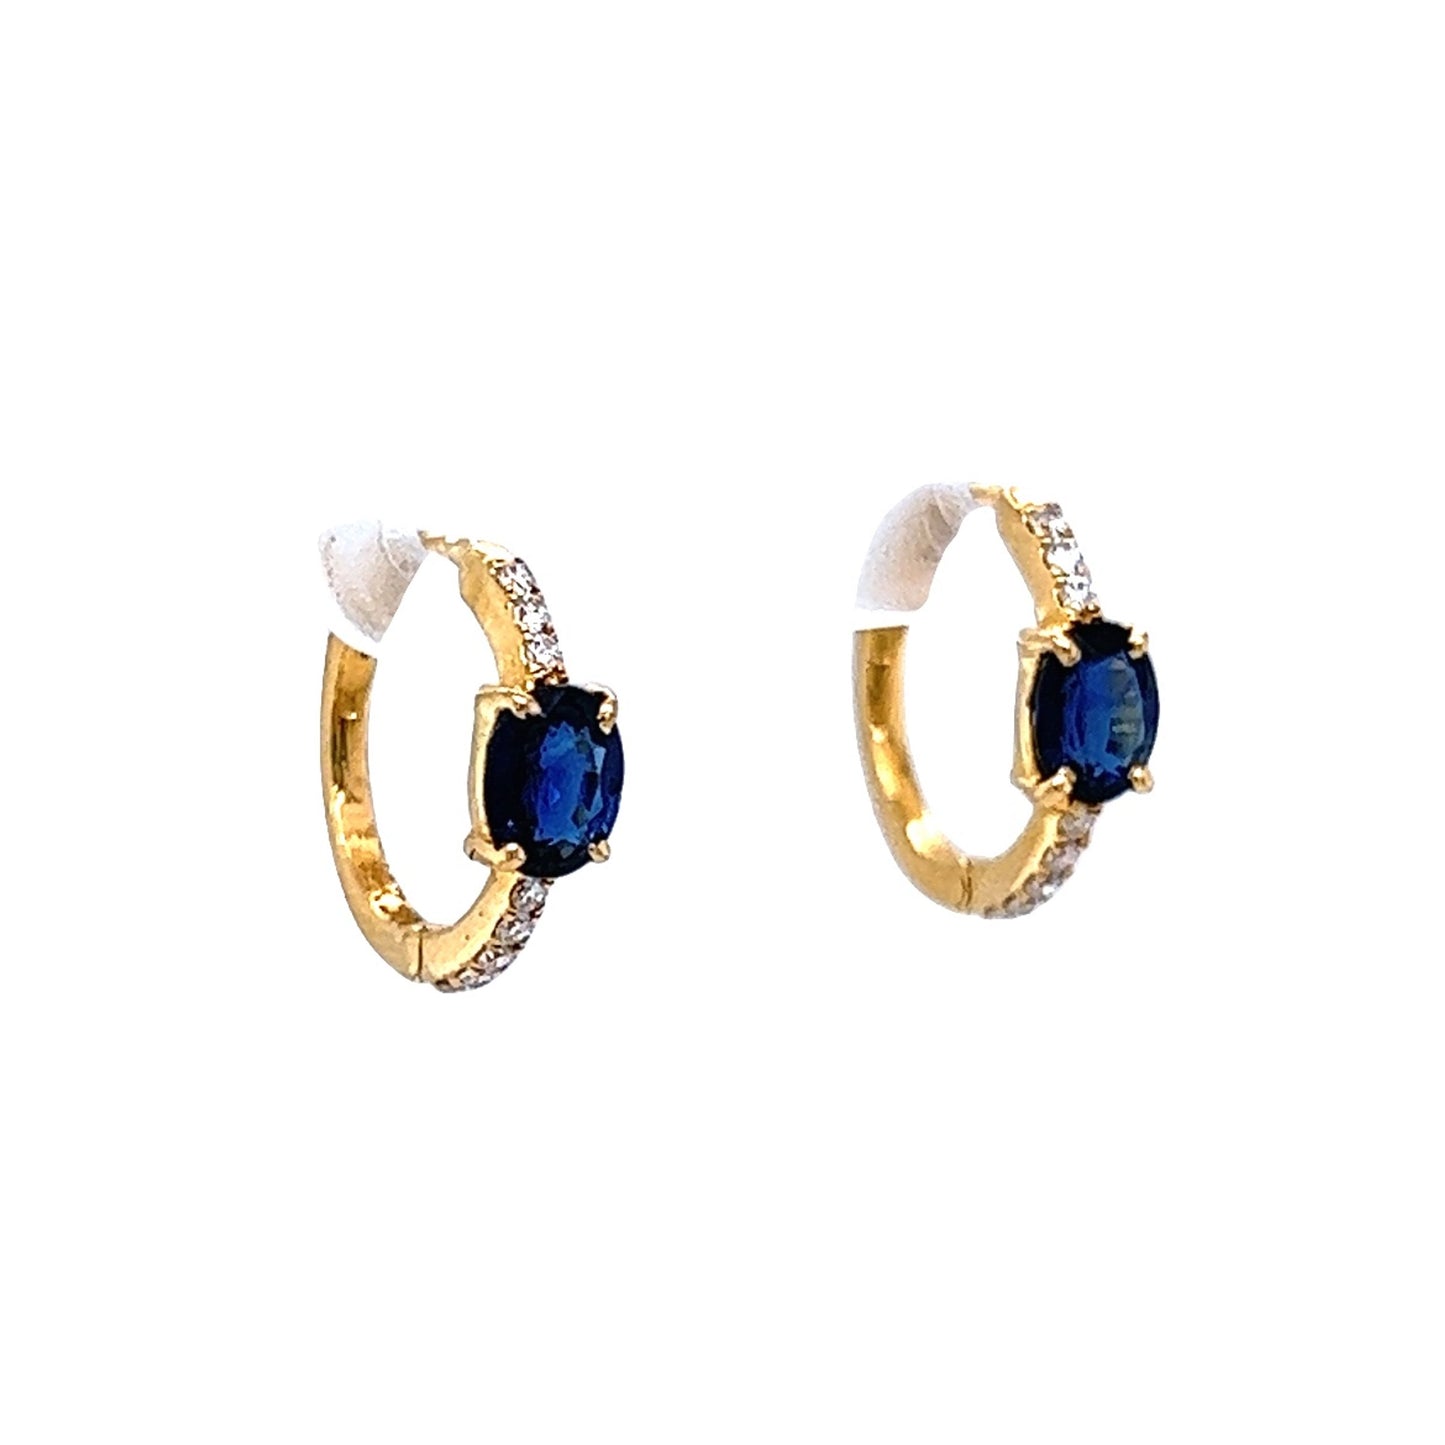 Oval Sapphire & Diamond Hoop Earrings in 14k Yellow Gold